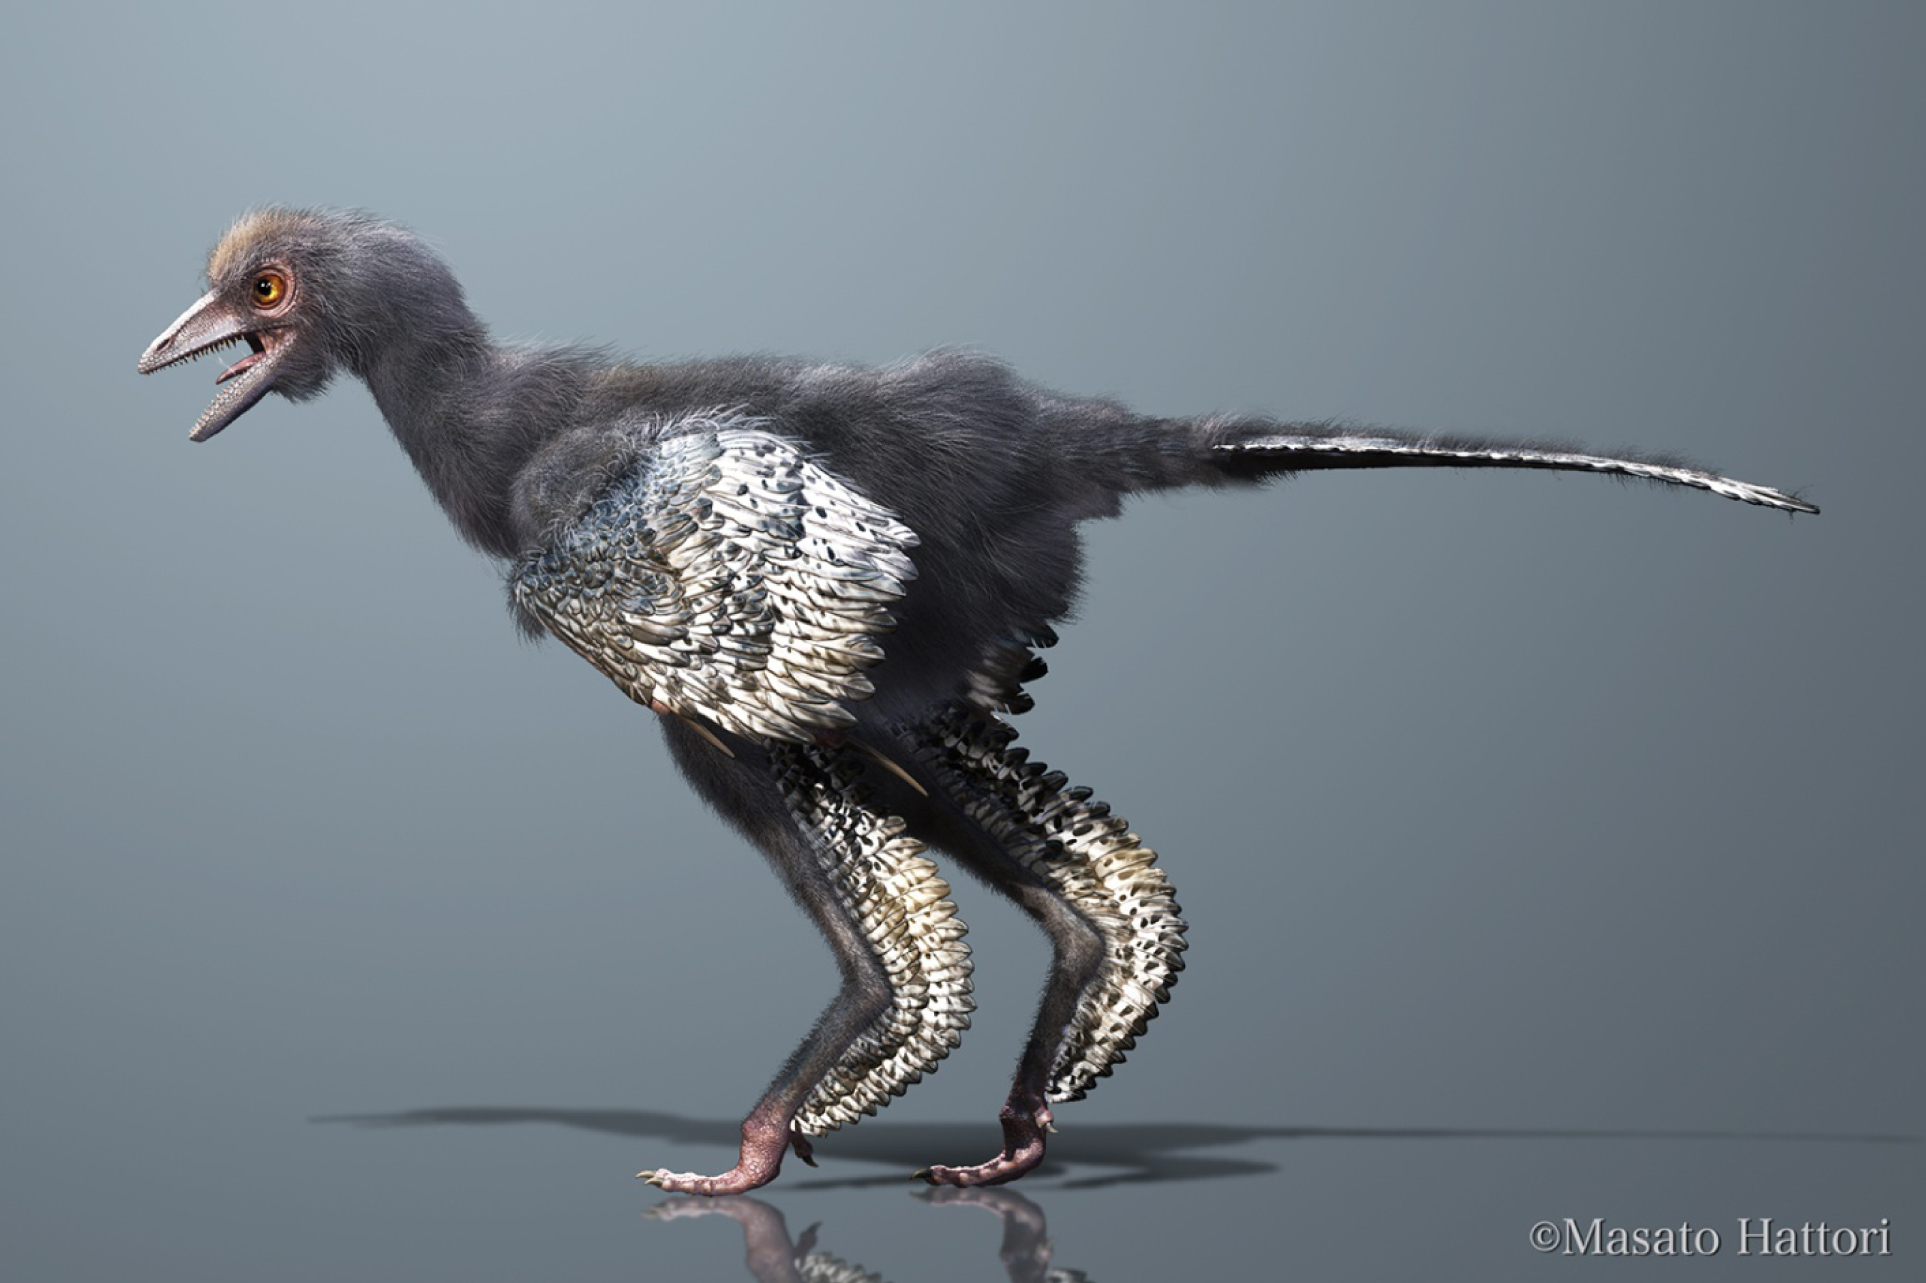 Reconstitution du théropode Aurornis xui, tel qu'imaginé par Masato Hattori. Il s'agirait de l'un des premiers avialiens. © Masato Hattori